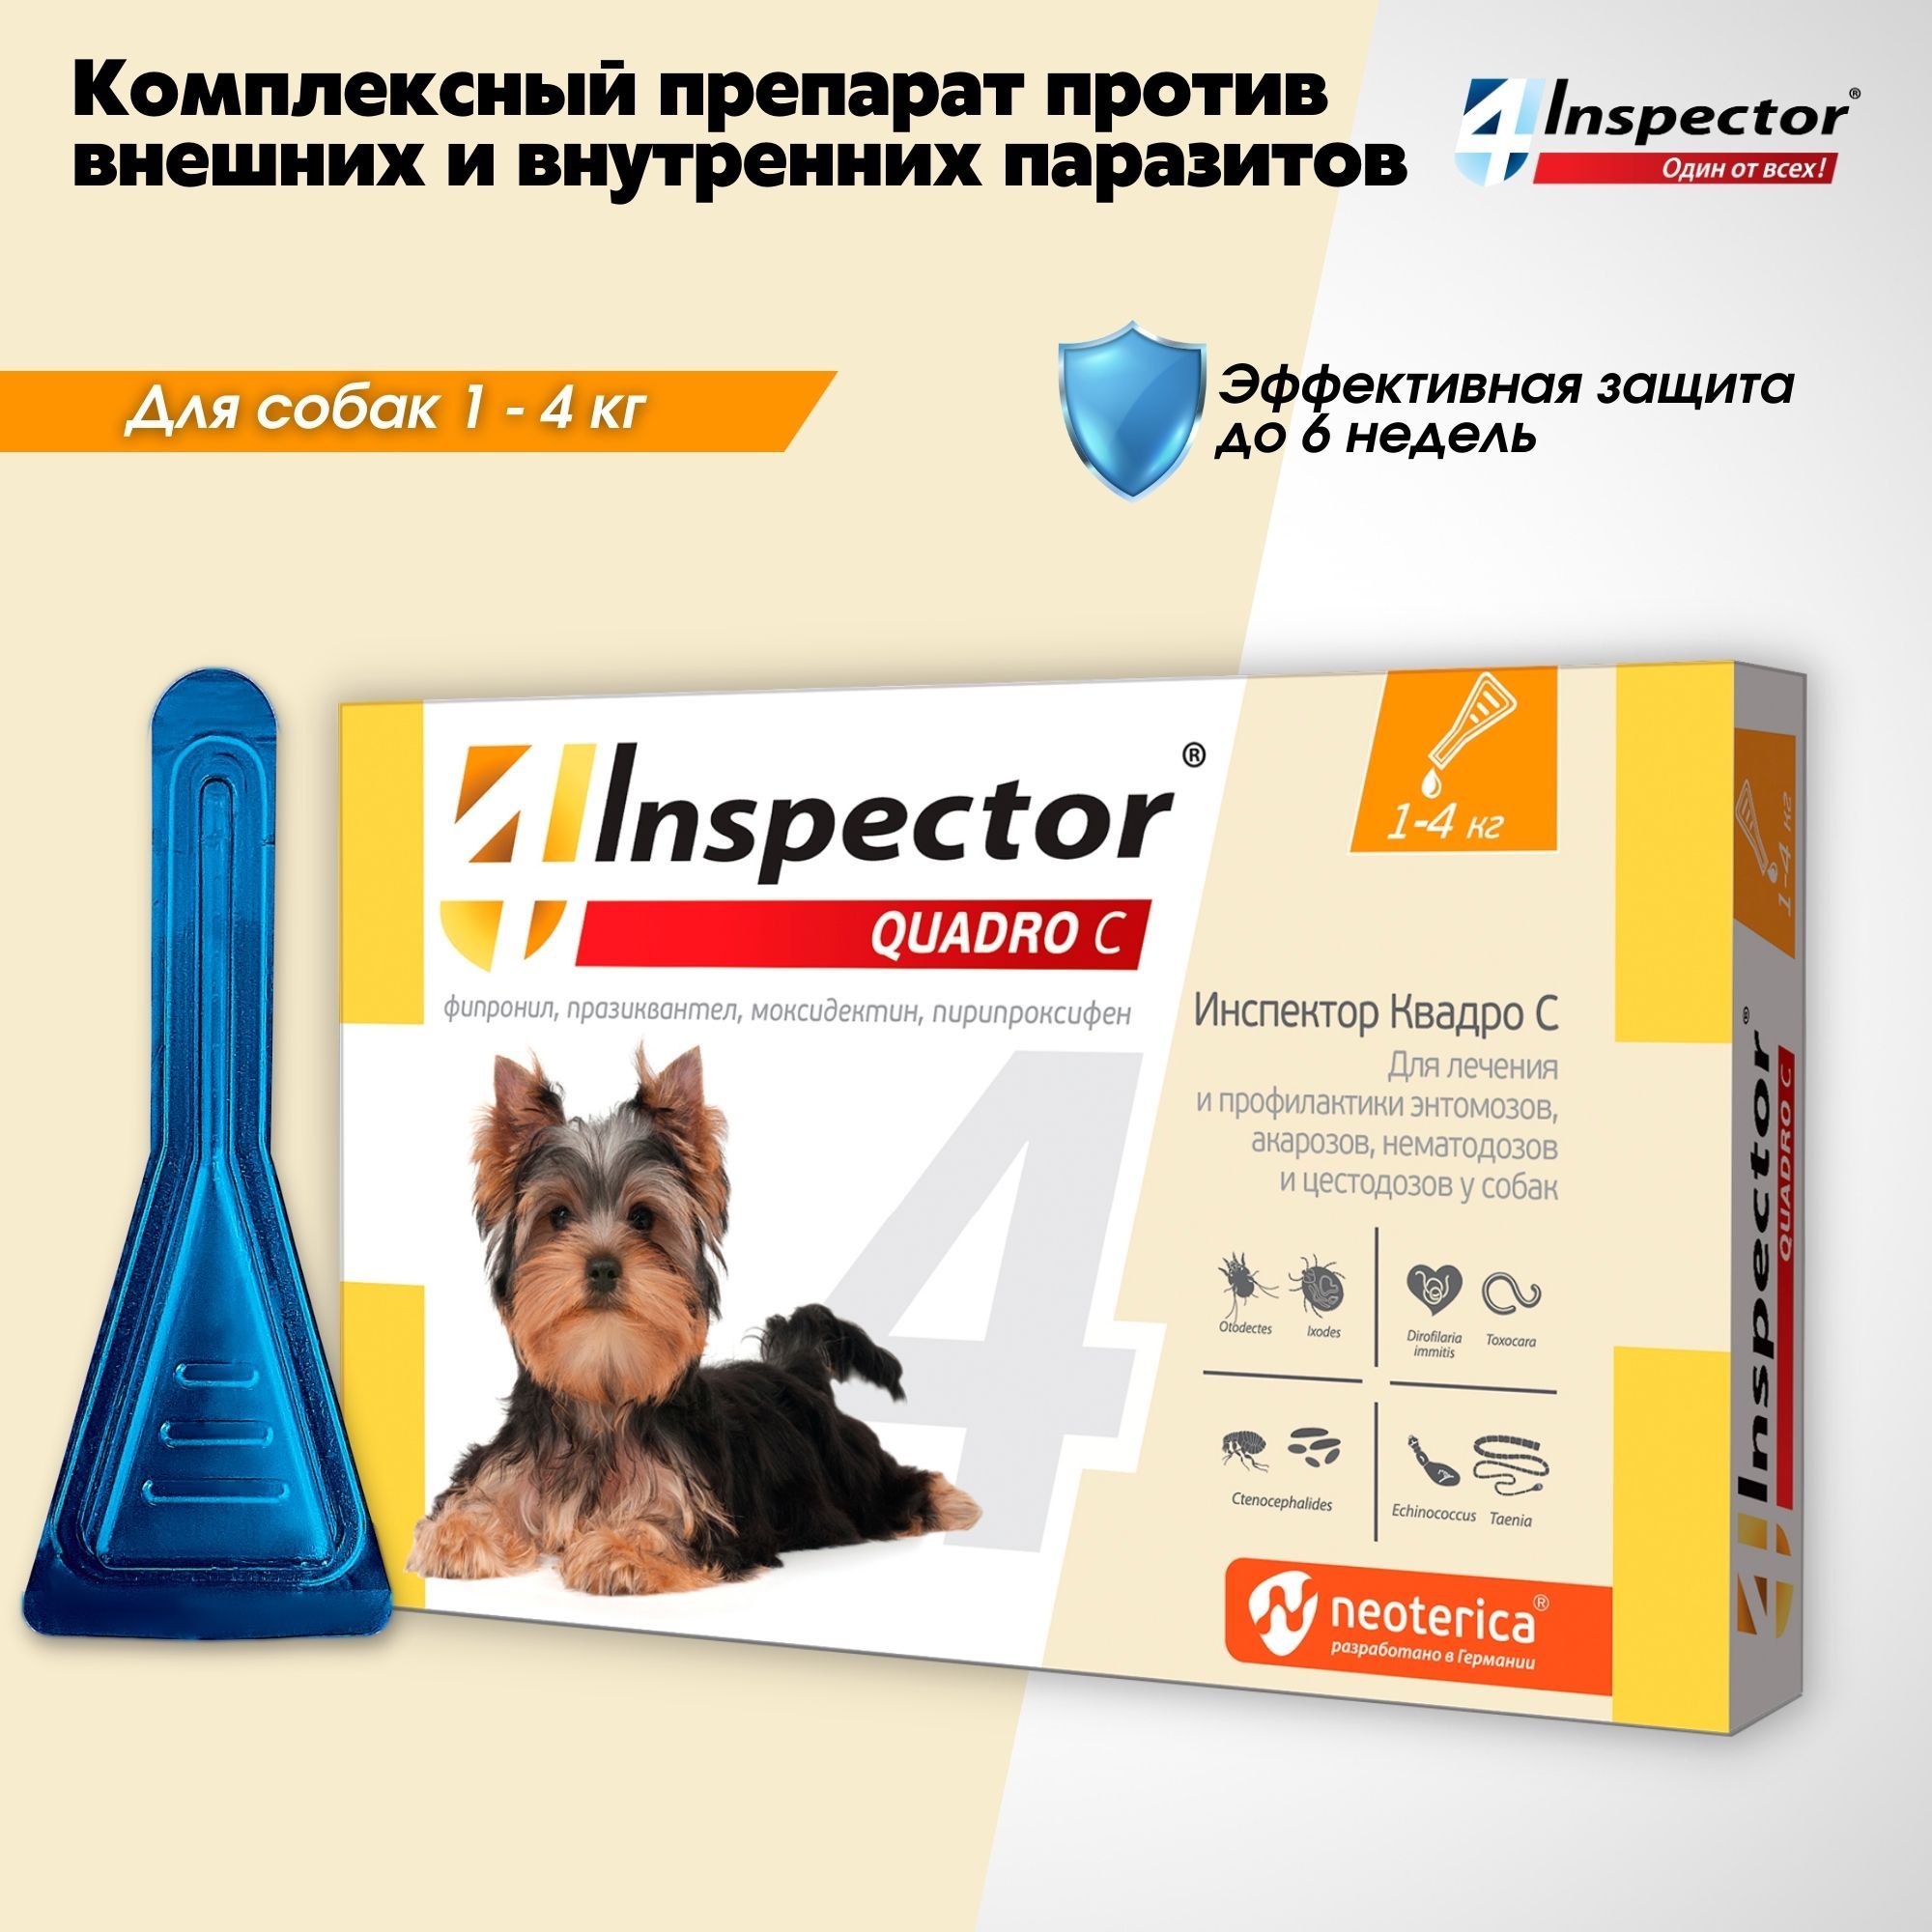 Inspector quadro tabs цены. Инспектор капли для собак до 4 кг. Капли для кошек "Inspector Quadro" 1-4 кг от блох. Инспектор таблетки для собак 4-10 кг. "Инспектор Квадро с", капли для собак 1-4кг.